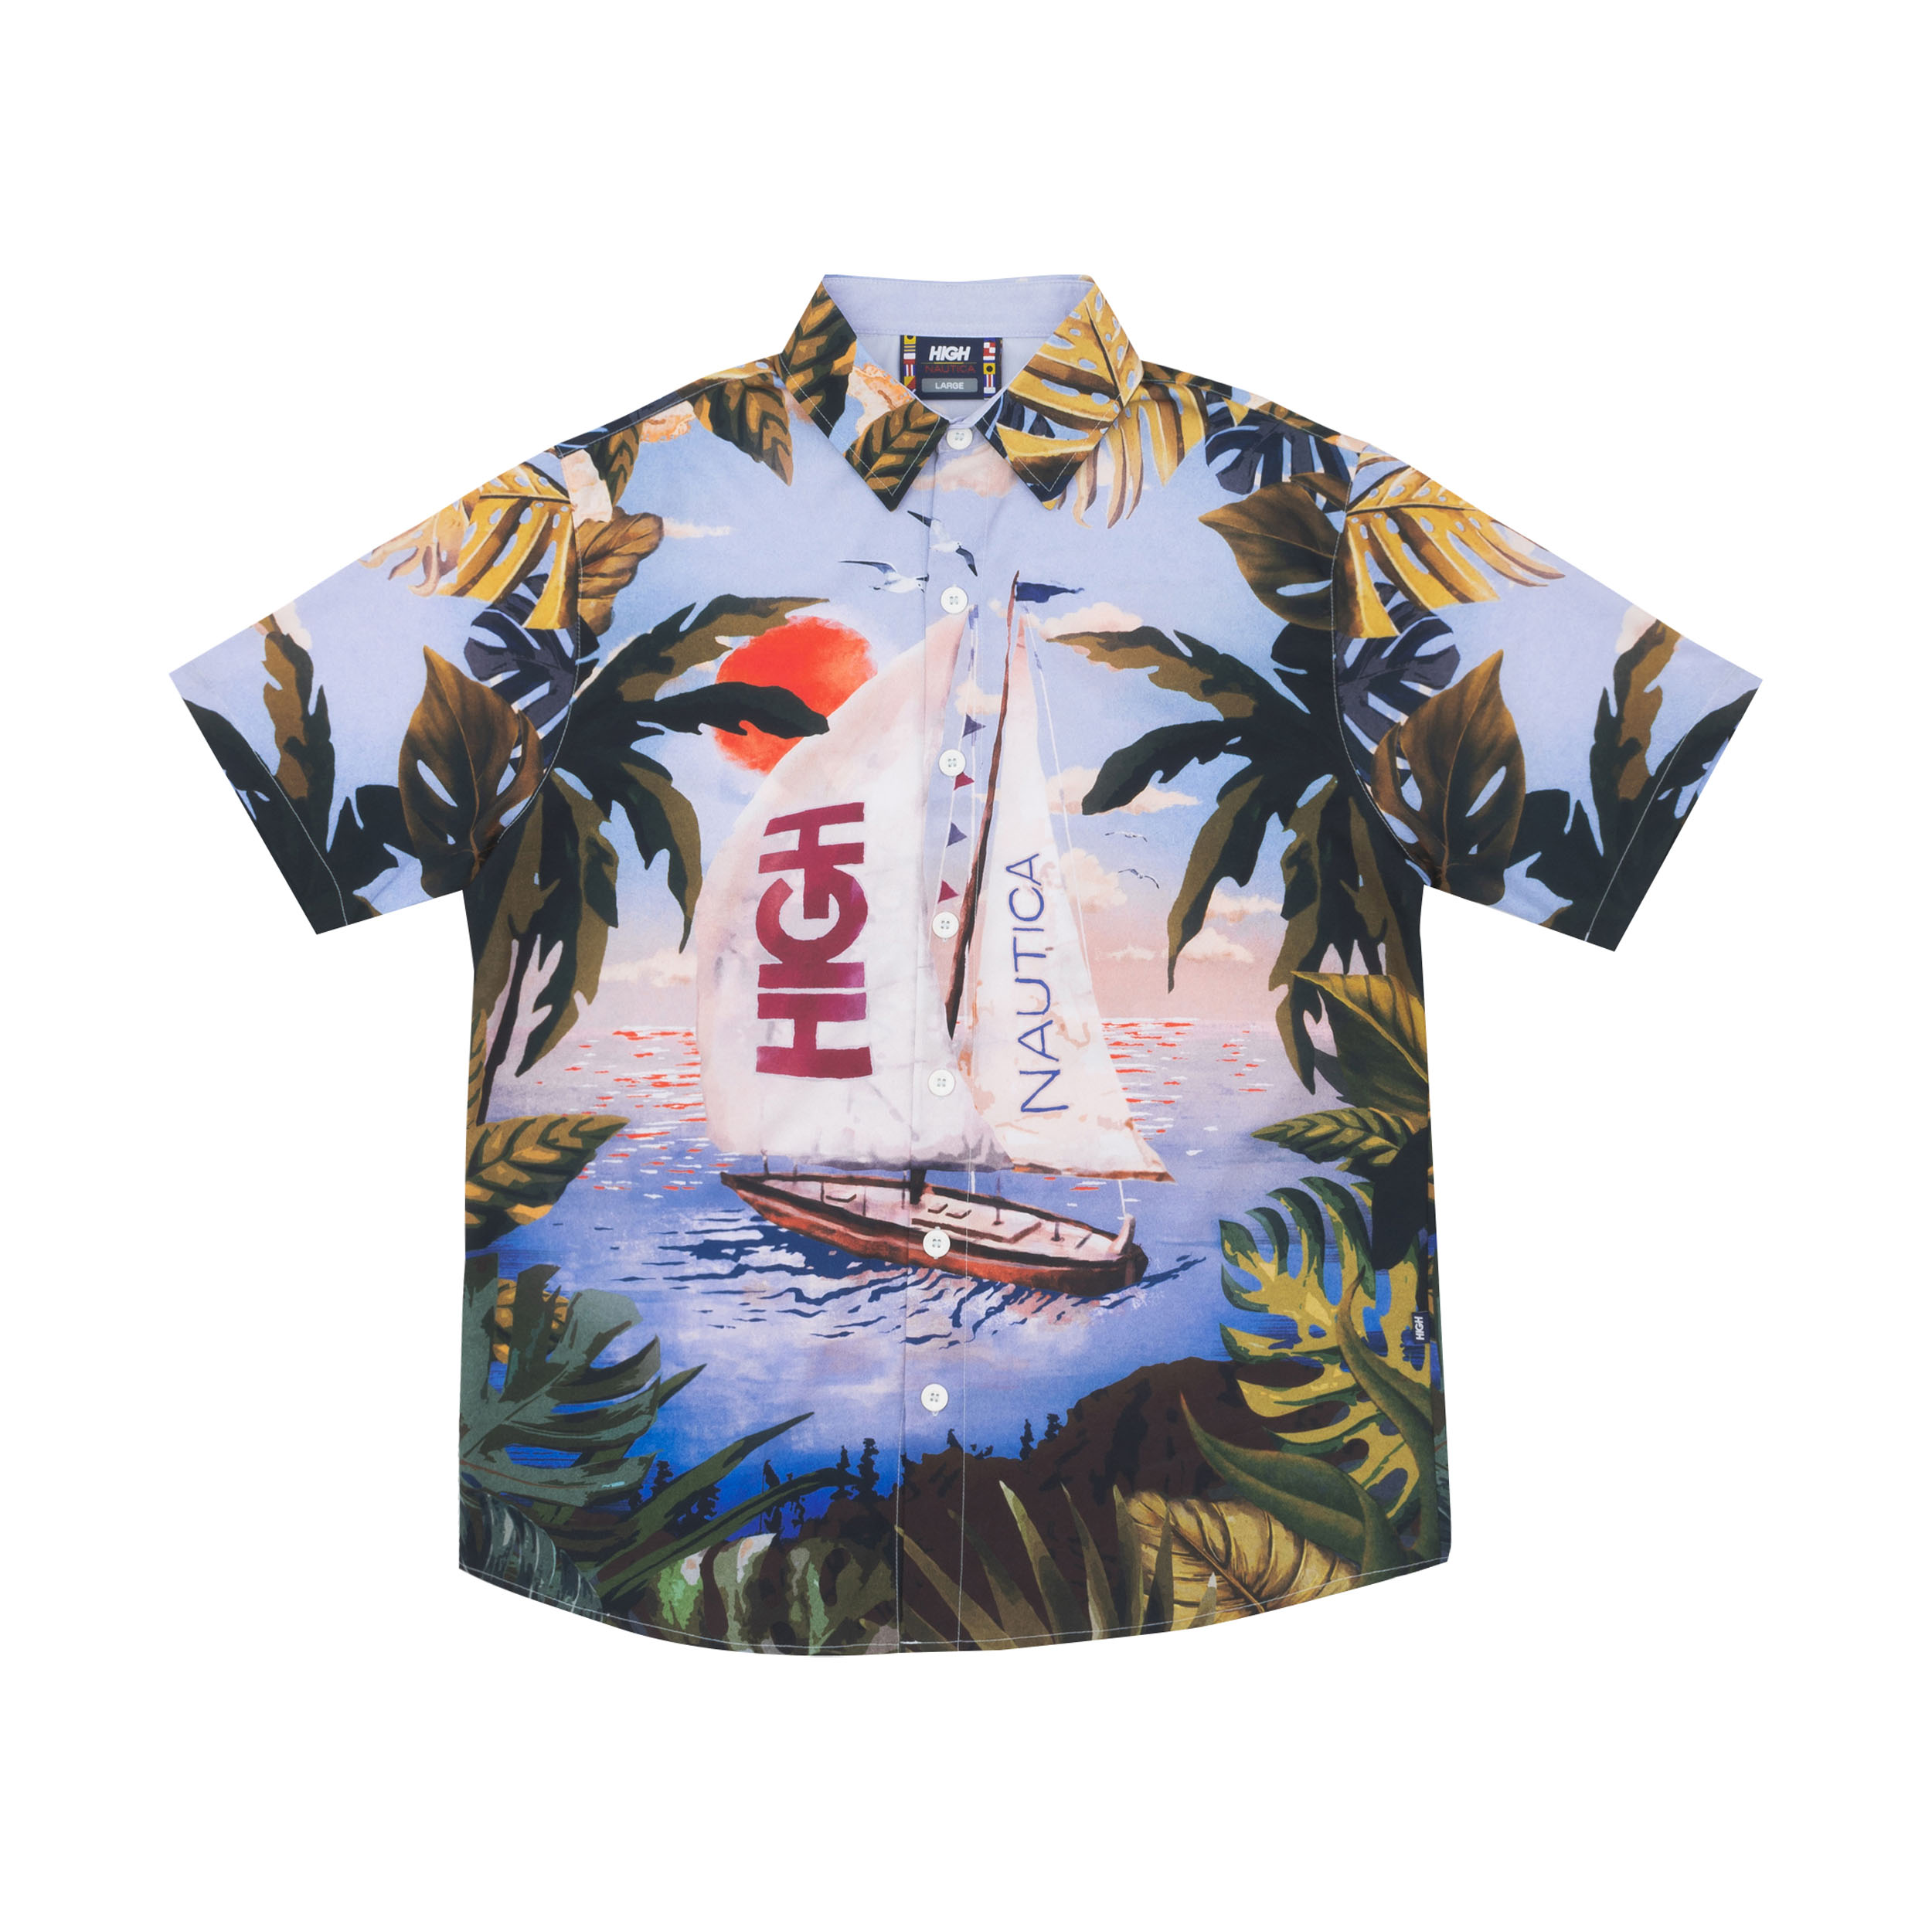 Nautica Men's Large Sailboat Hawaiian Button-Down Shirt